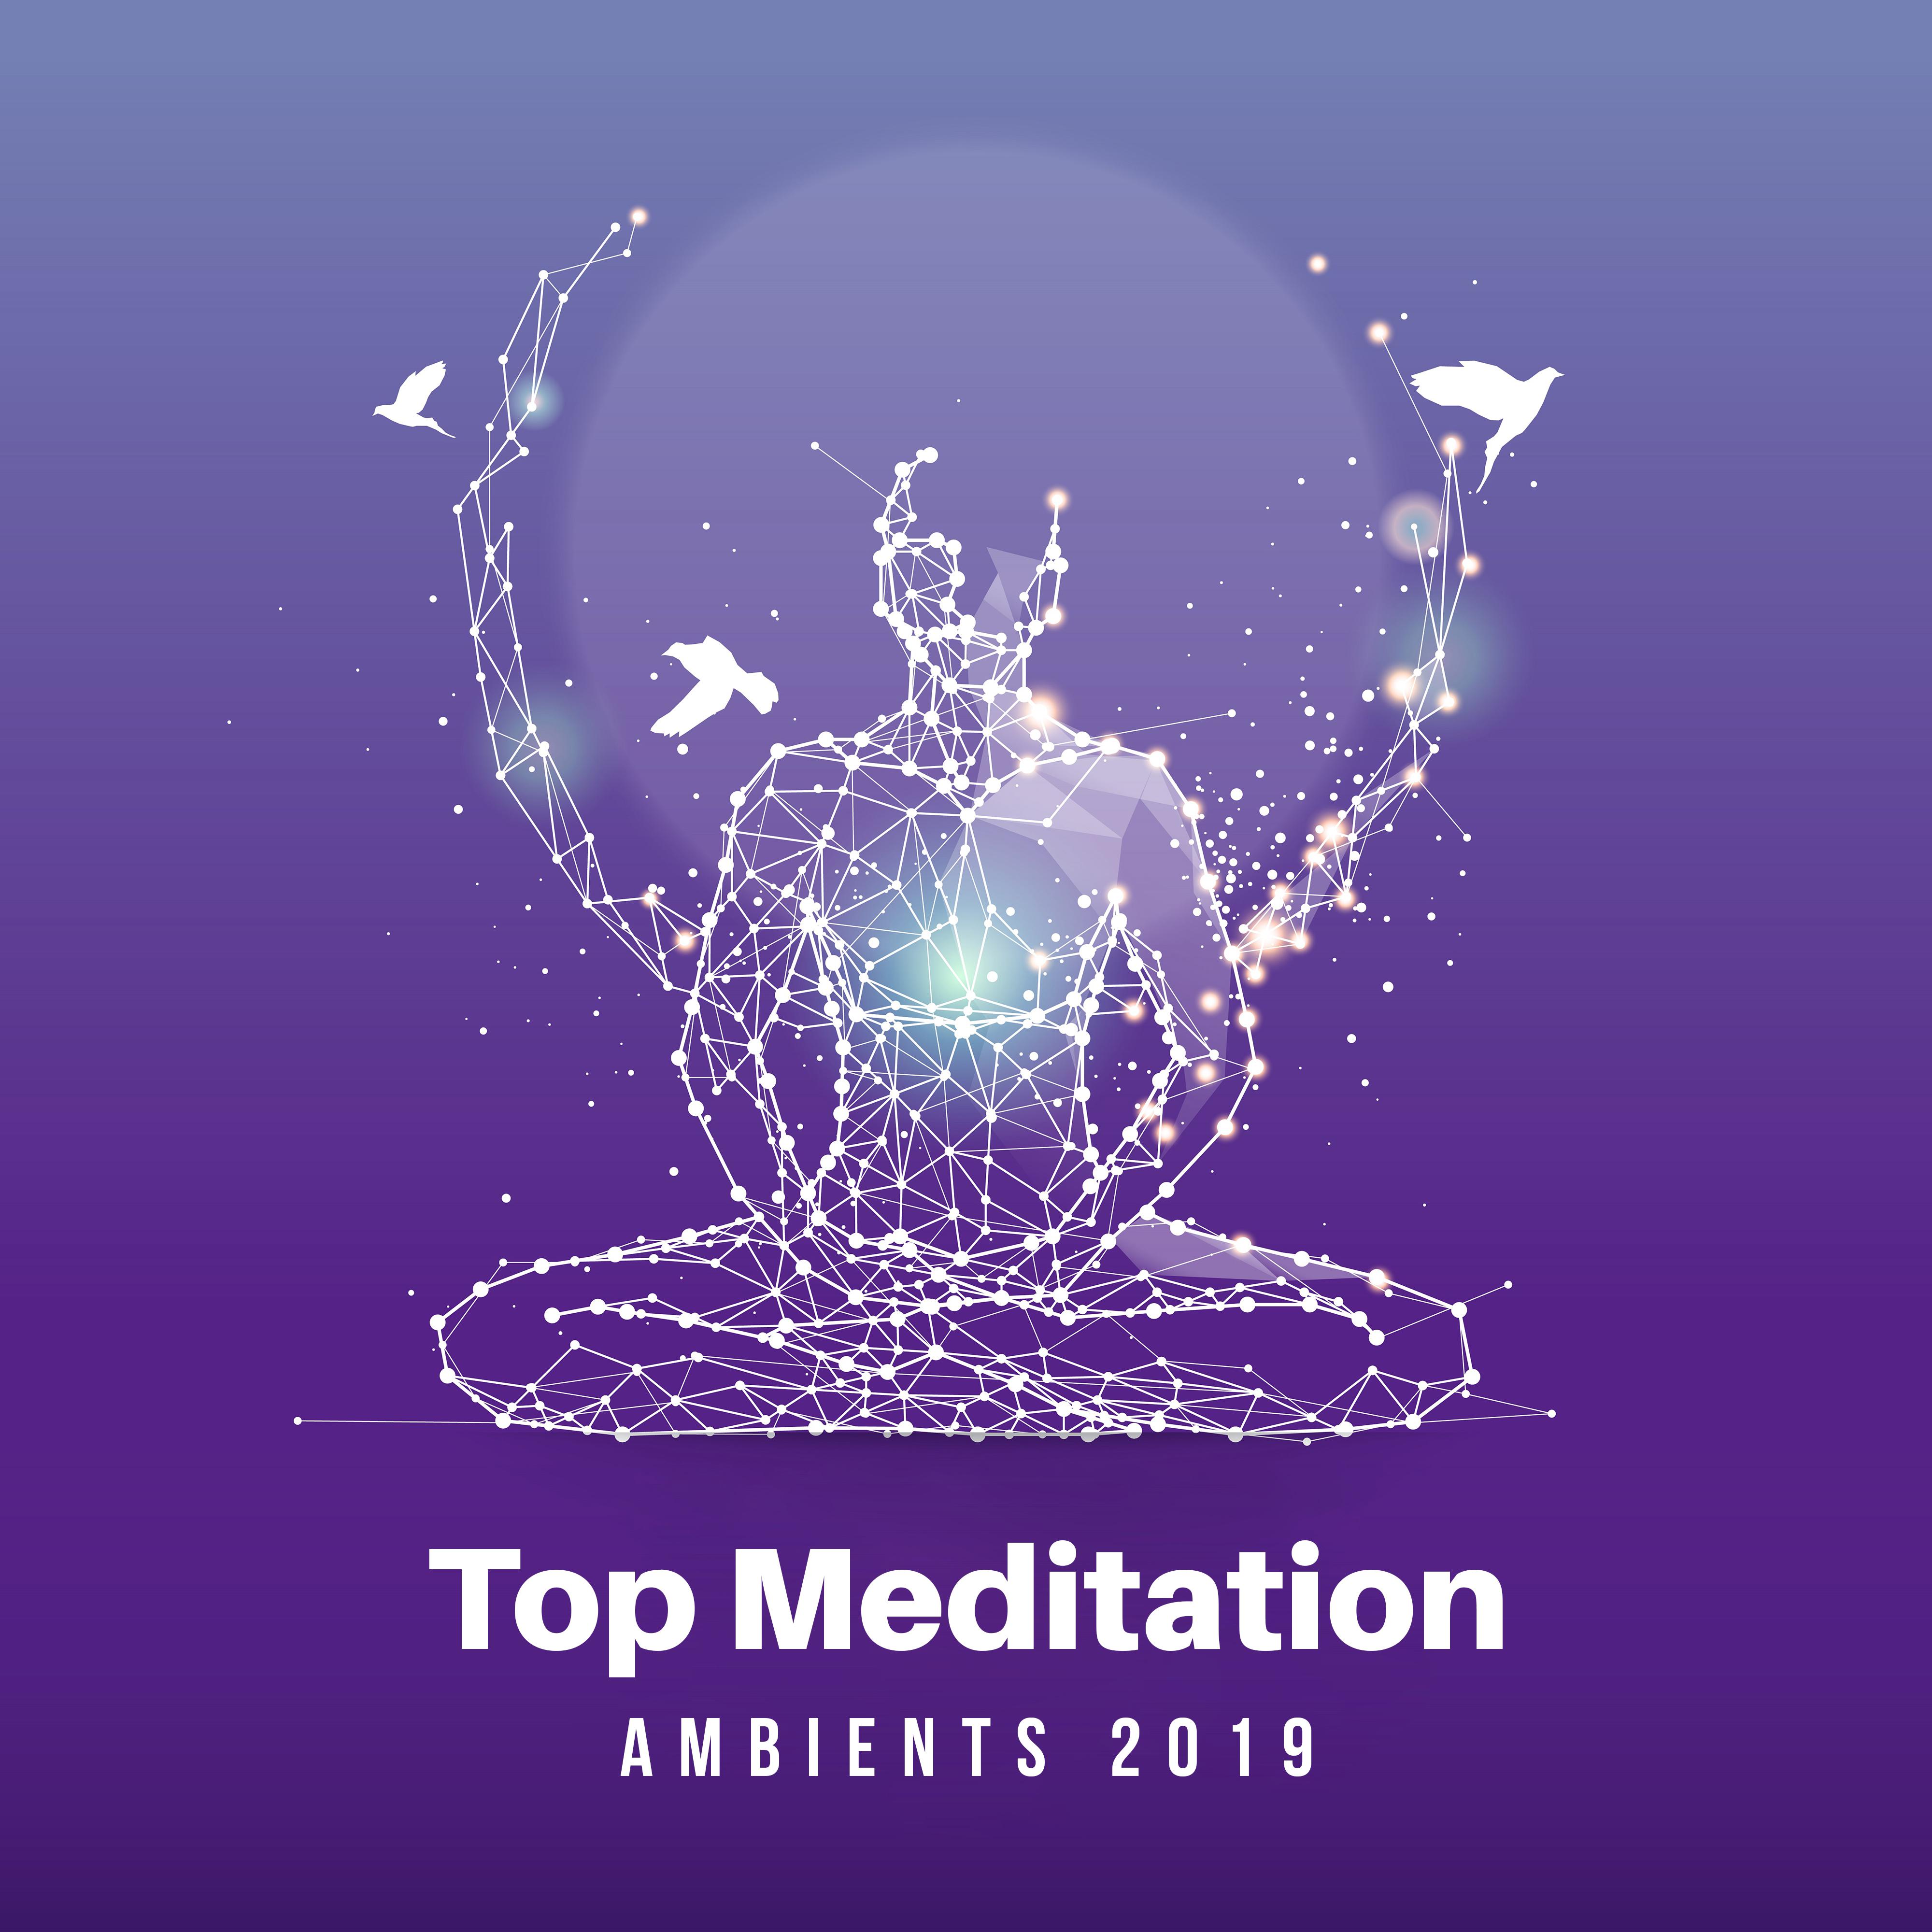 Top Meditation Ambients 2019